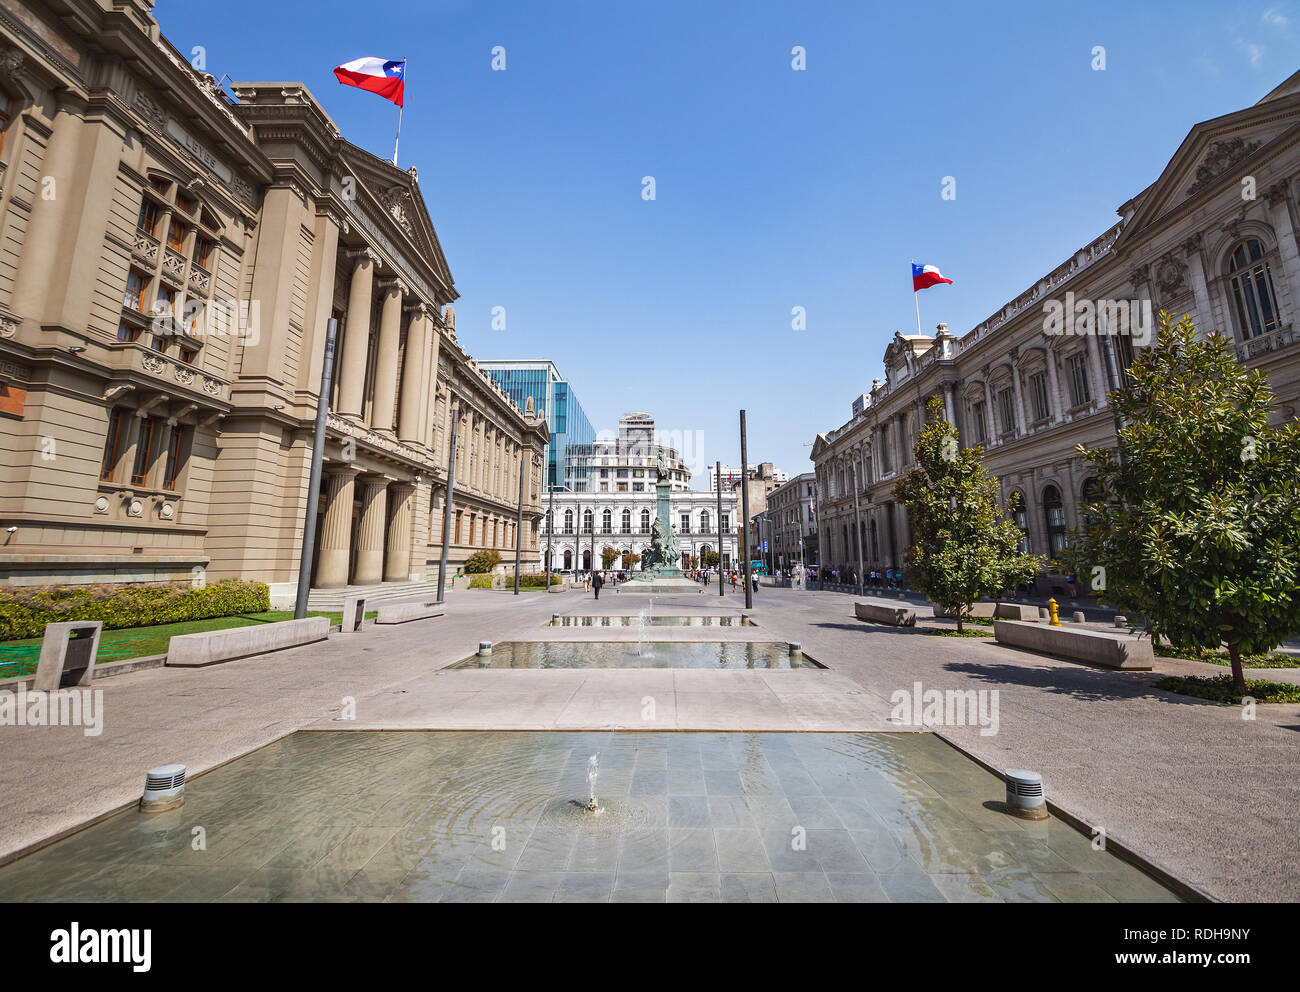 Plaza Plaza Montt-Varas con los tribunales de justicia y antiguo palacio de congresos - Santiago, Chile Foto de stock